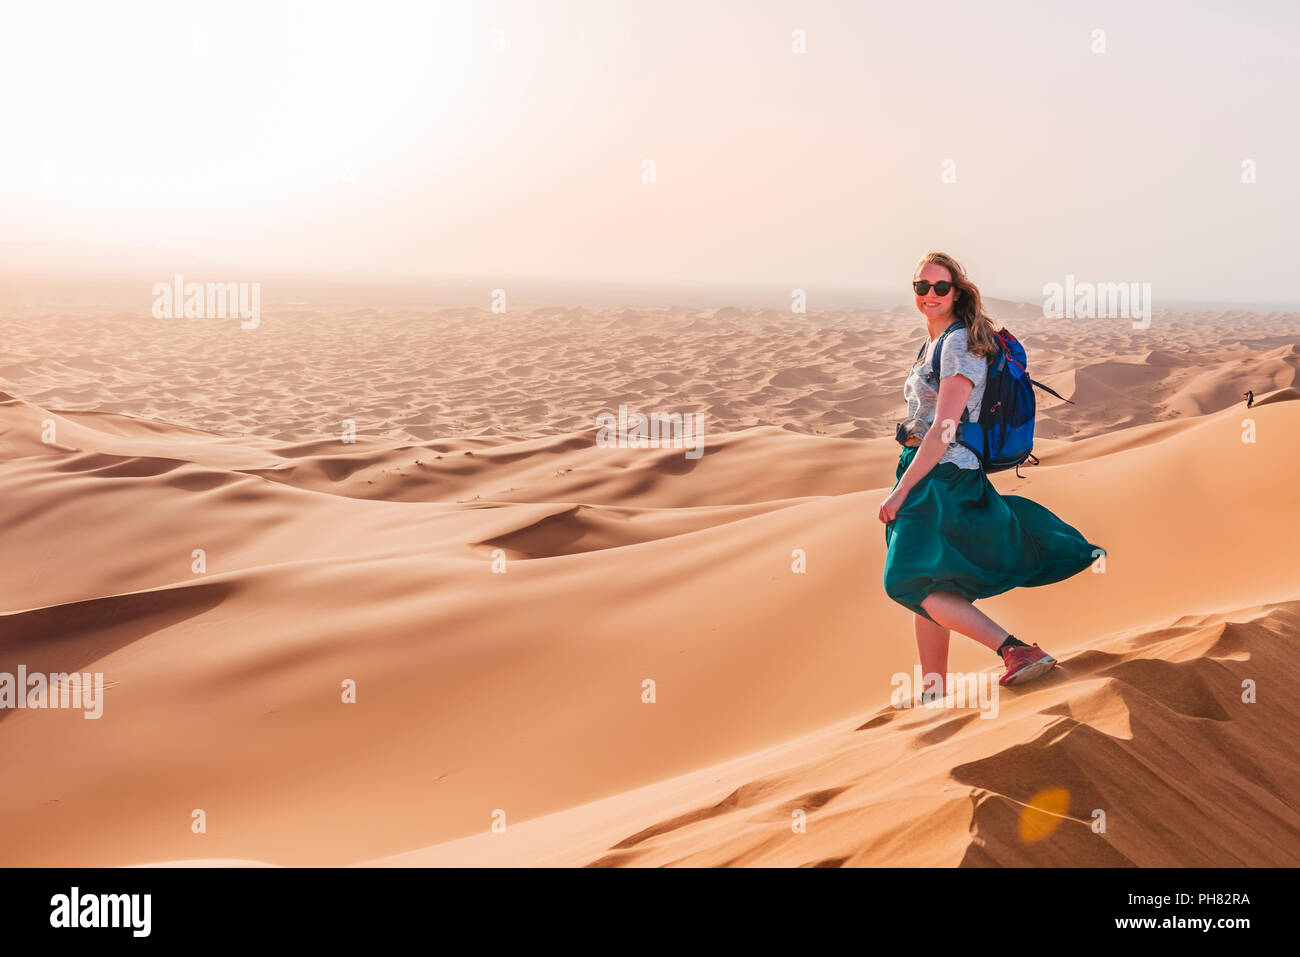 Female hiker on a red sand dune in the desert, dune landscape Erg Chebbi, Merzouga, Sahara, Morocco Stock Photo